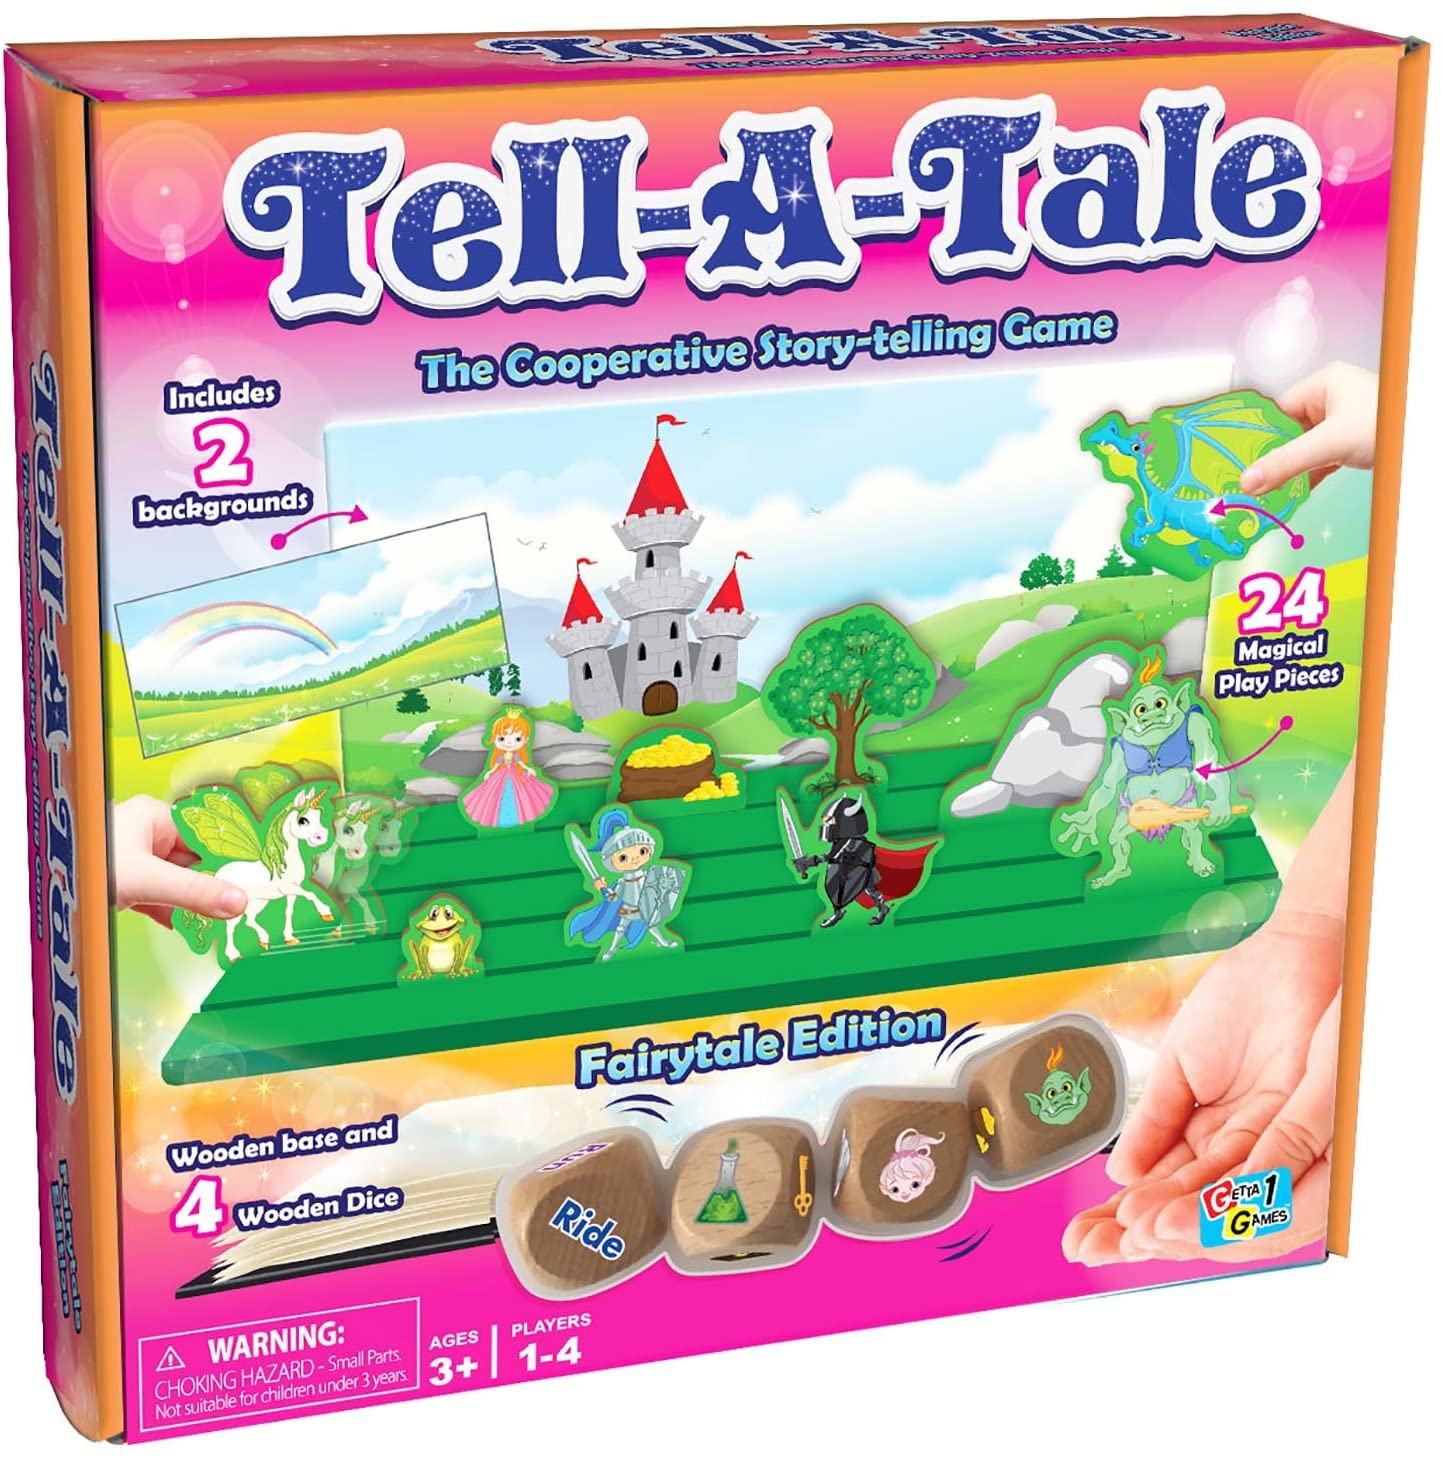 Tell a Tale (Fairytale Edition)